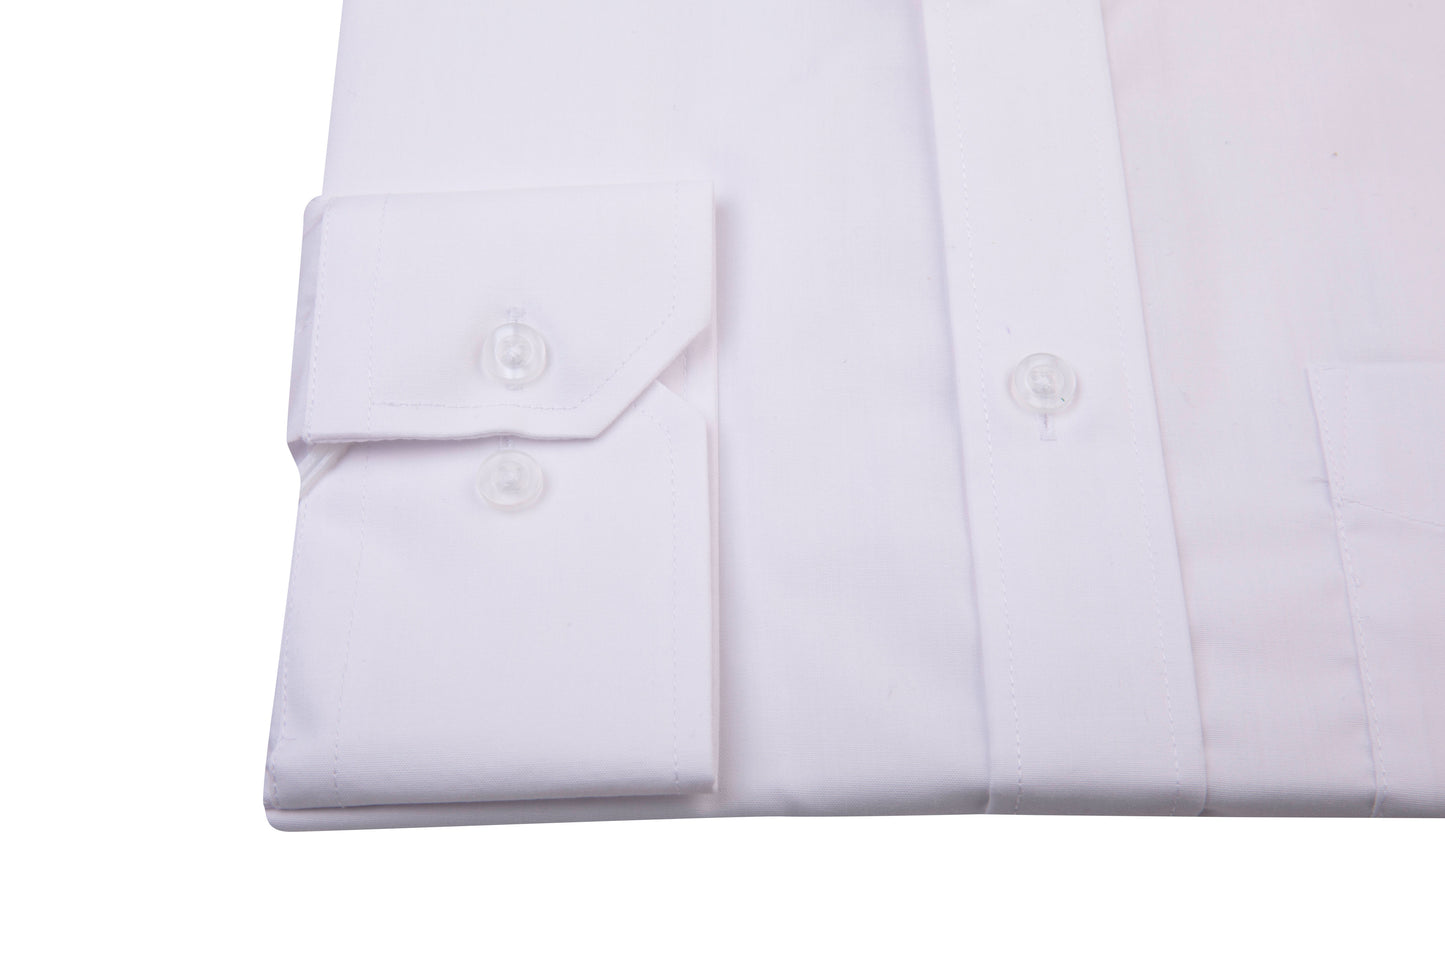 Men's White Regular Collar Formal Shirt